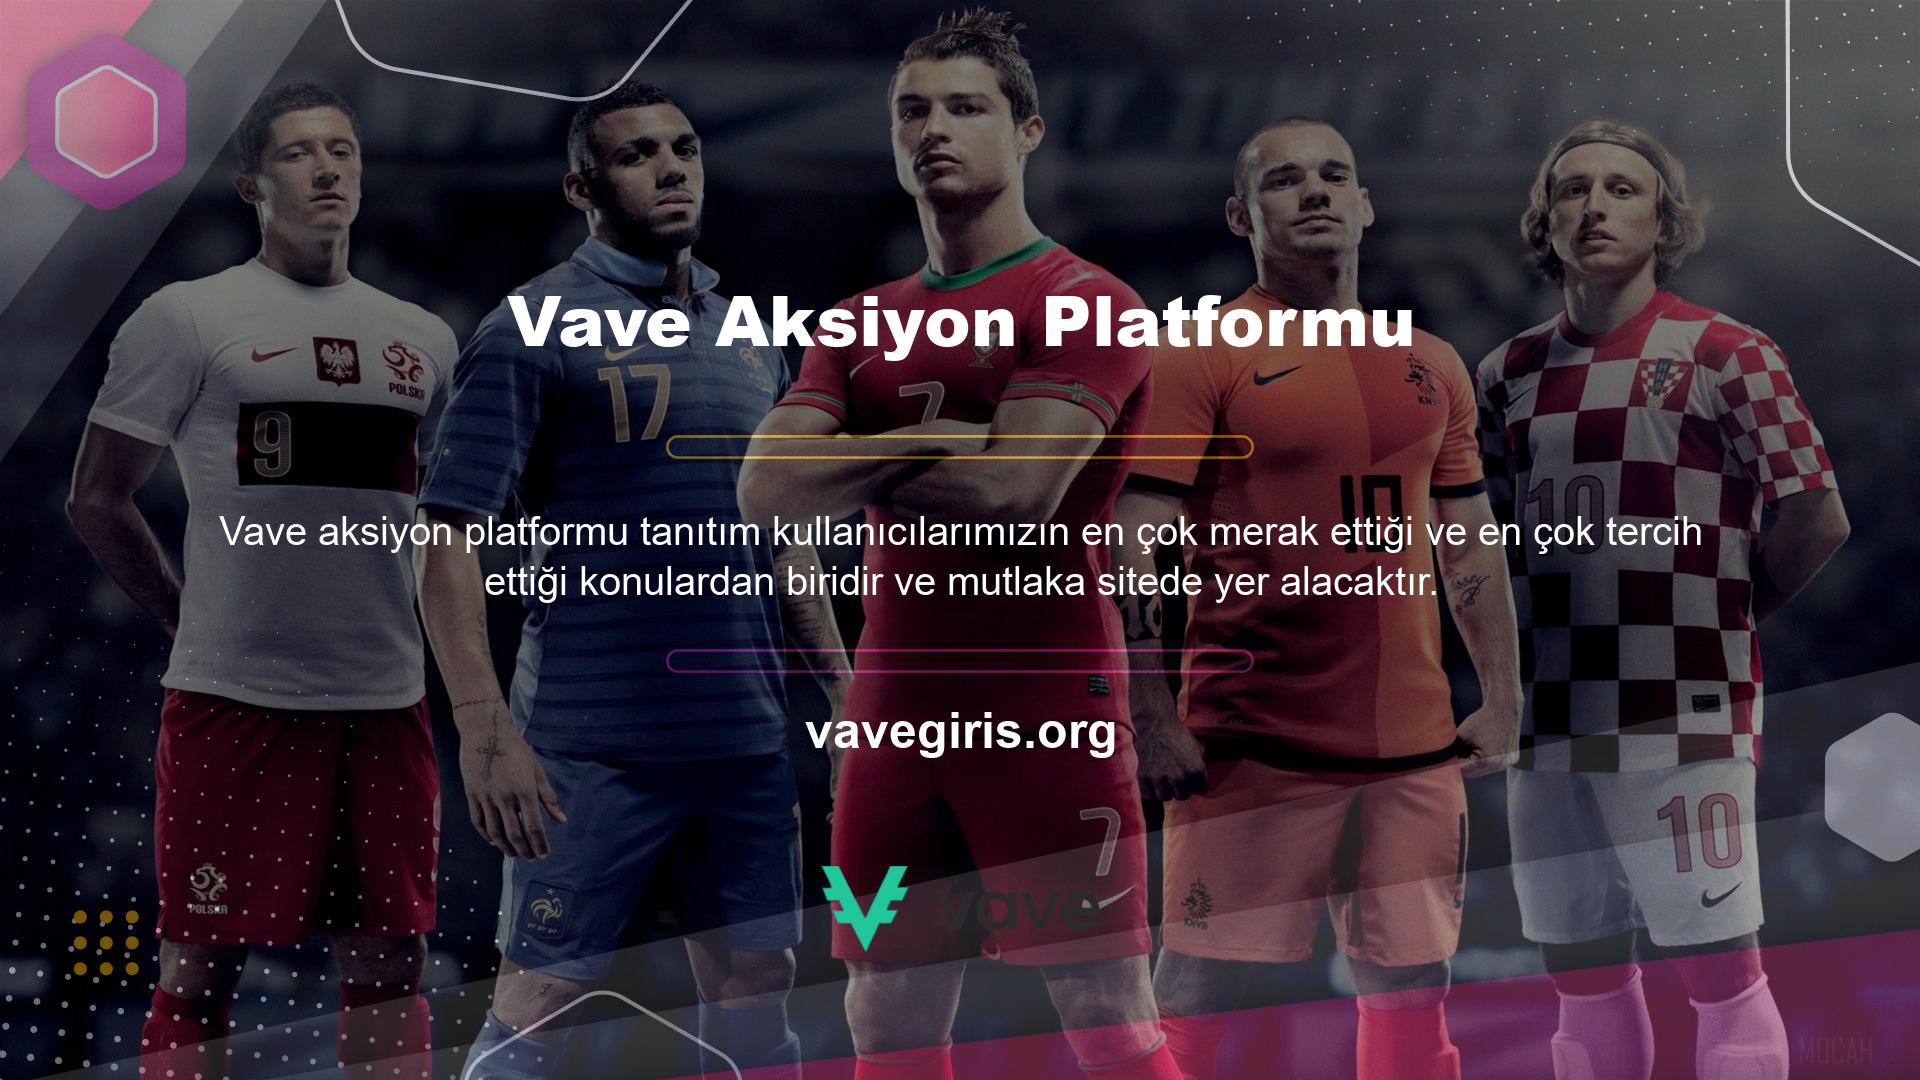 Vave promosyon platformunun sitede yer alan kategorilerin en sağında yer alan promosyonlar bölümünde çeşitli bonus seçenekleri bulunmaktadır